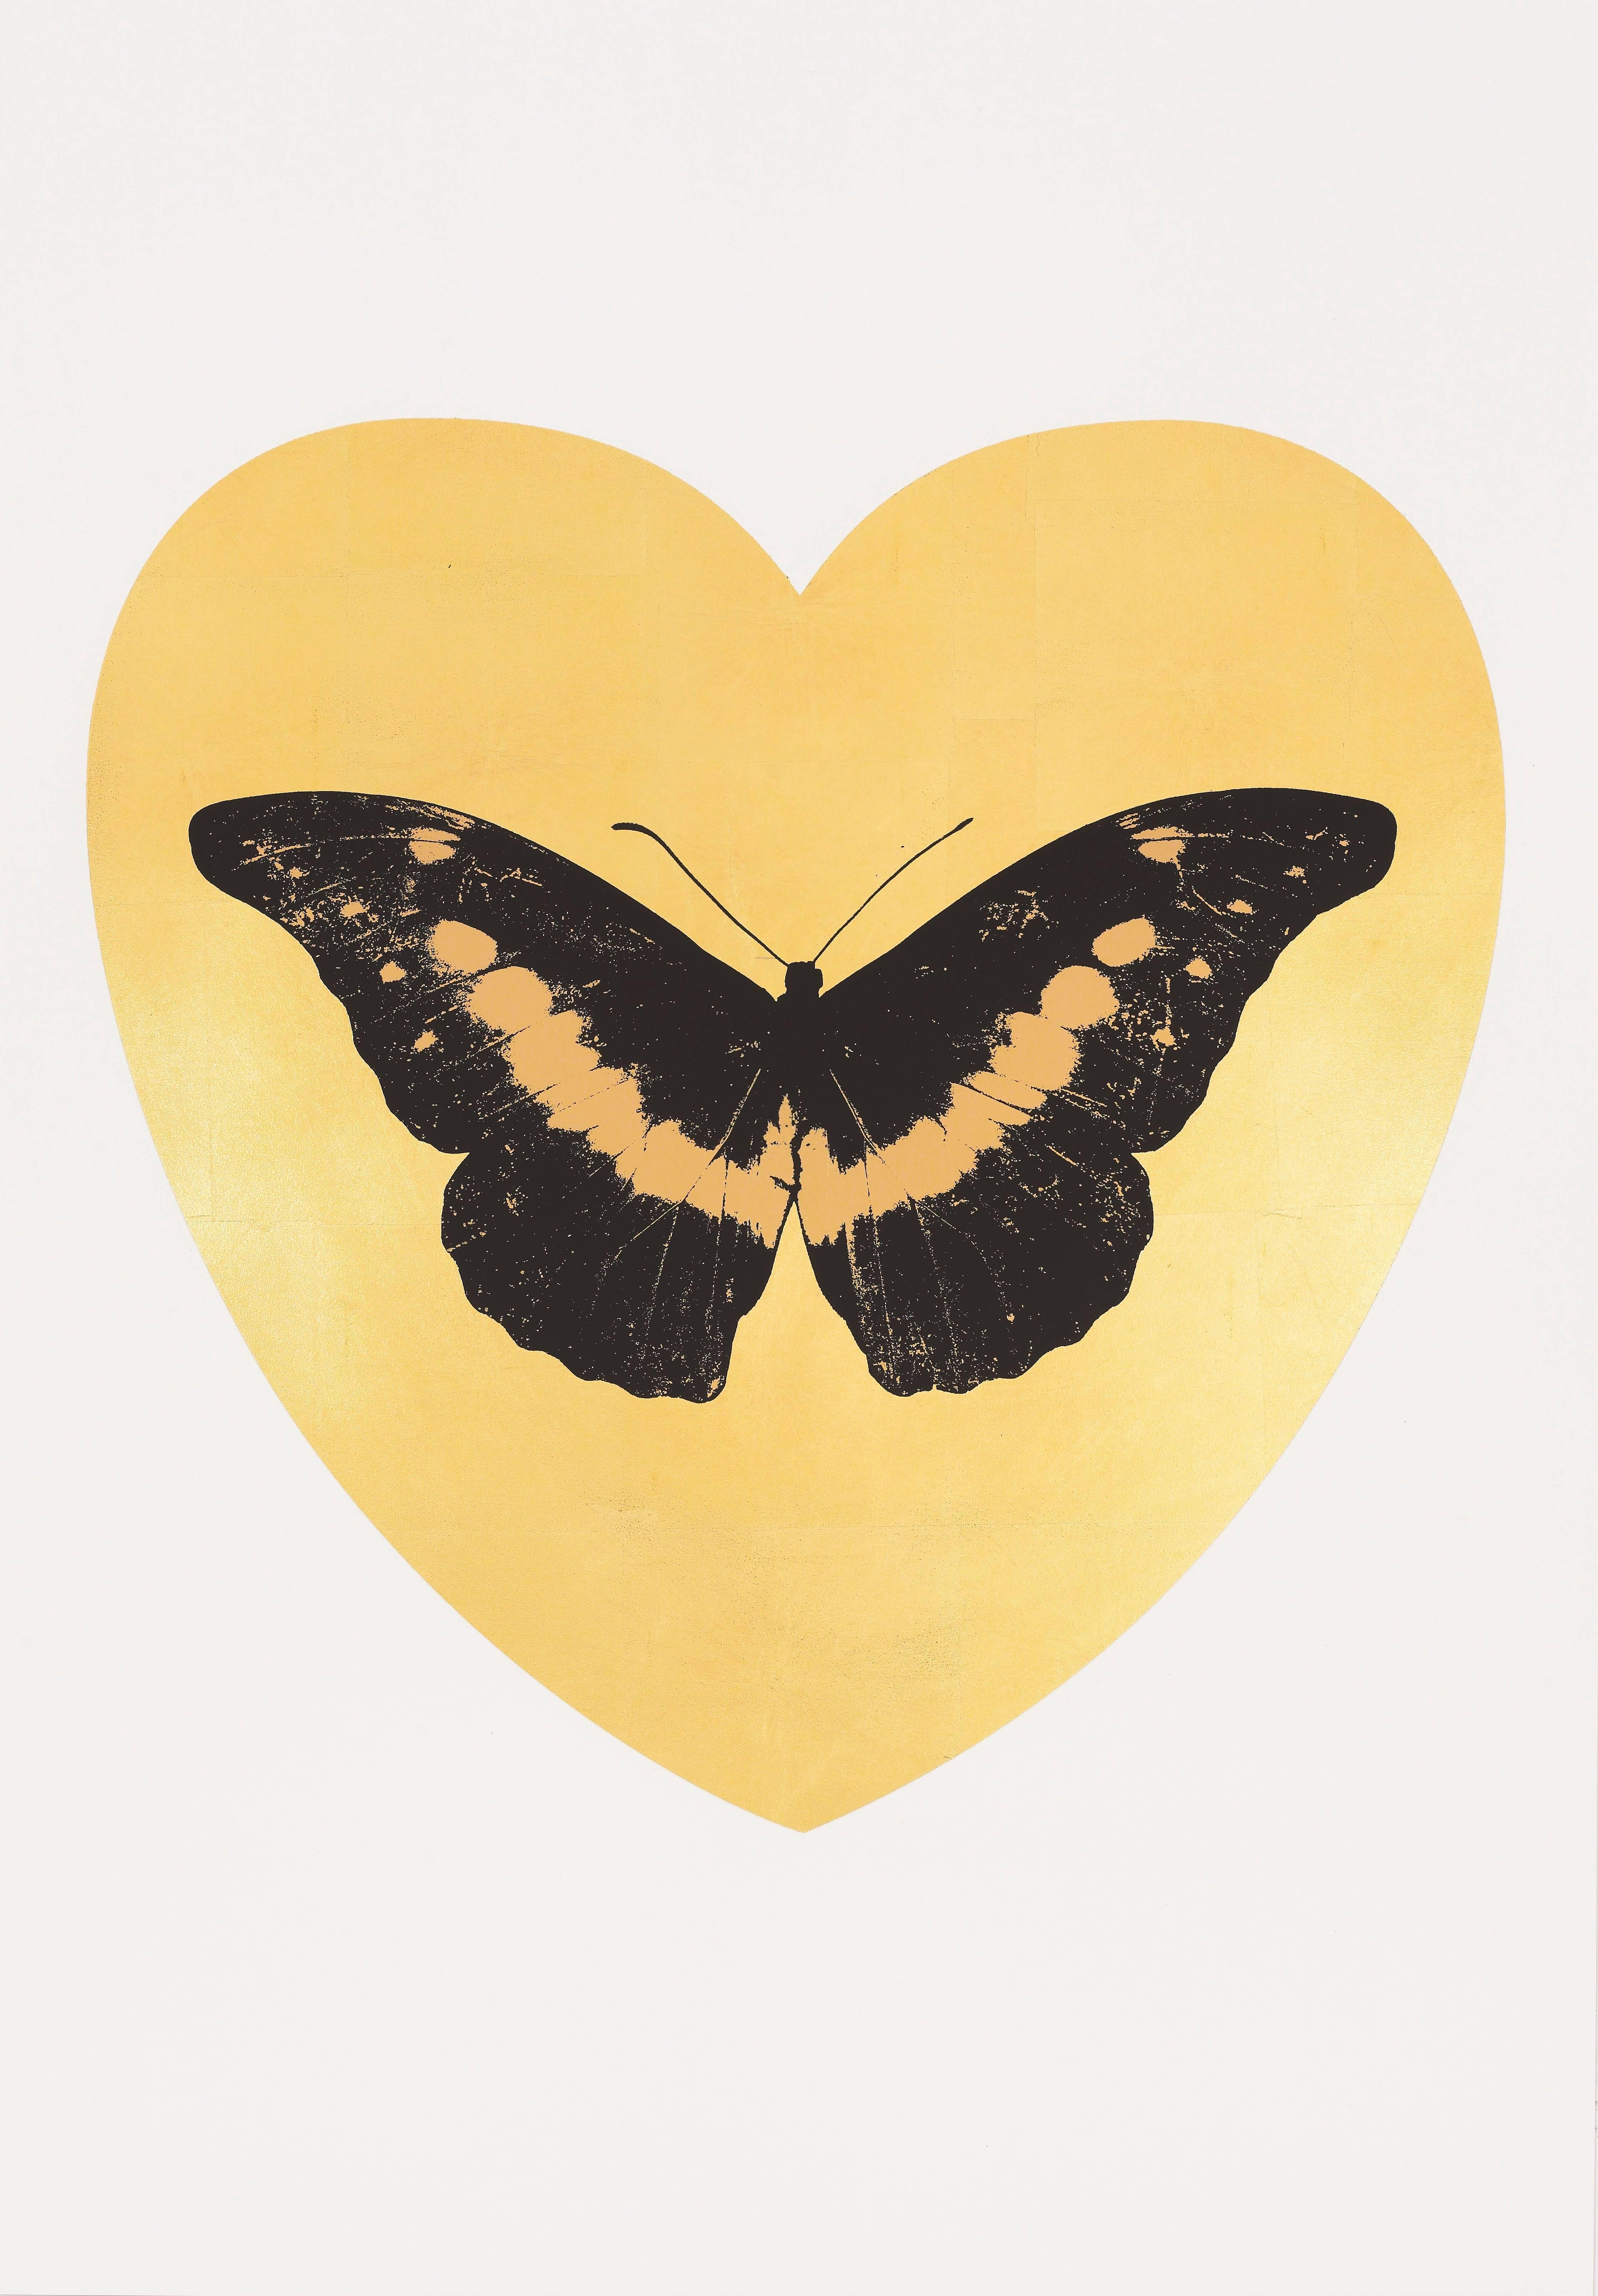 Damien Hirst Animal Print - I Love You - gold leaf, black, cool gold